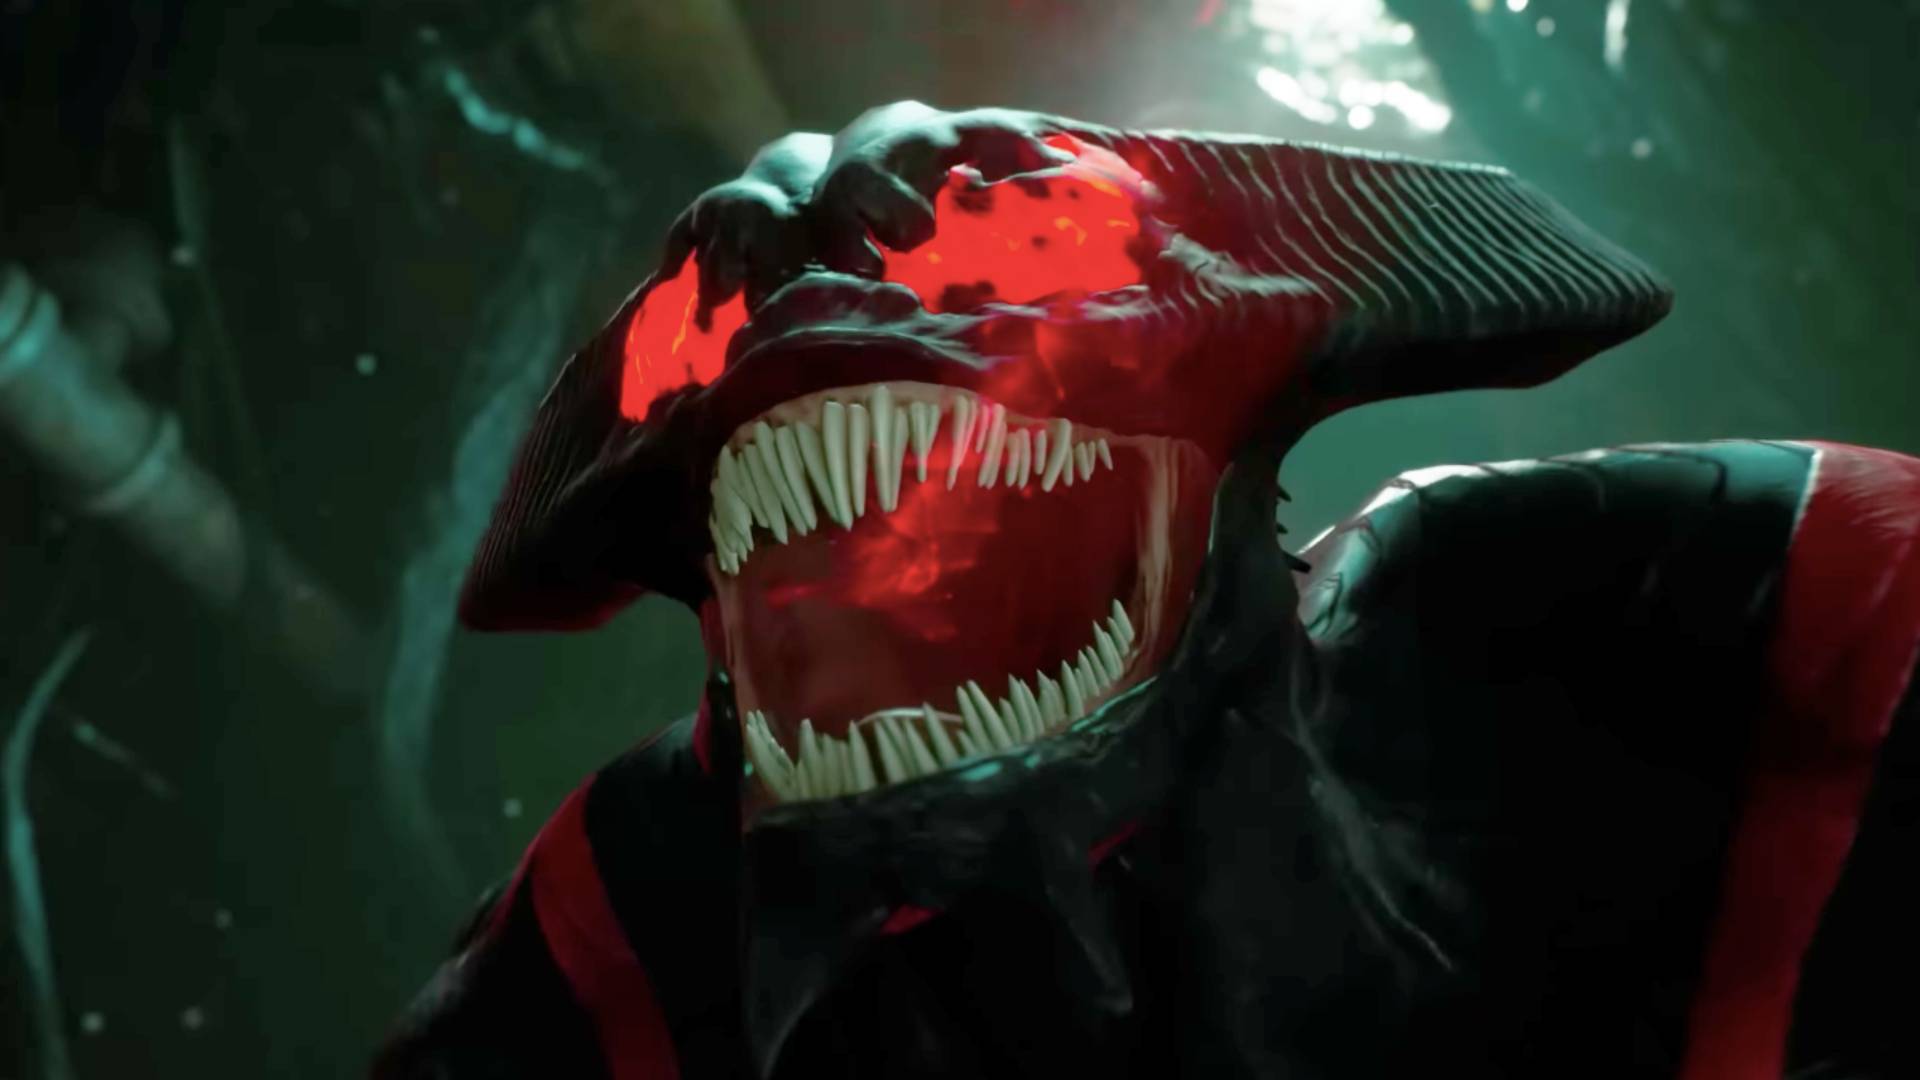 Marvel's Midnight Suns: Venom DLC! by Venom-Rules-all on DeviantArt